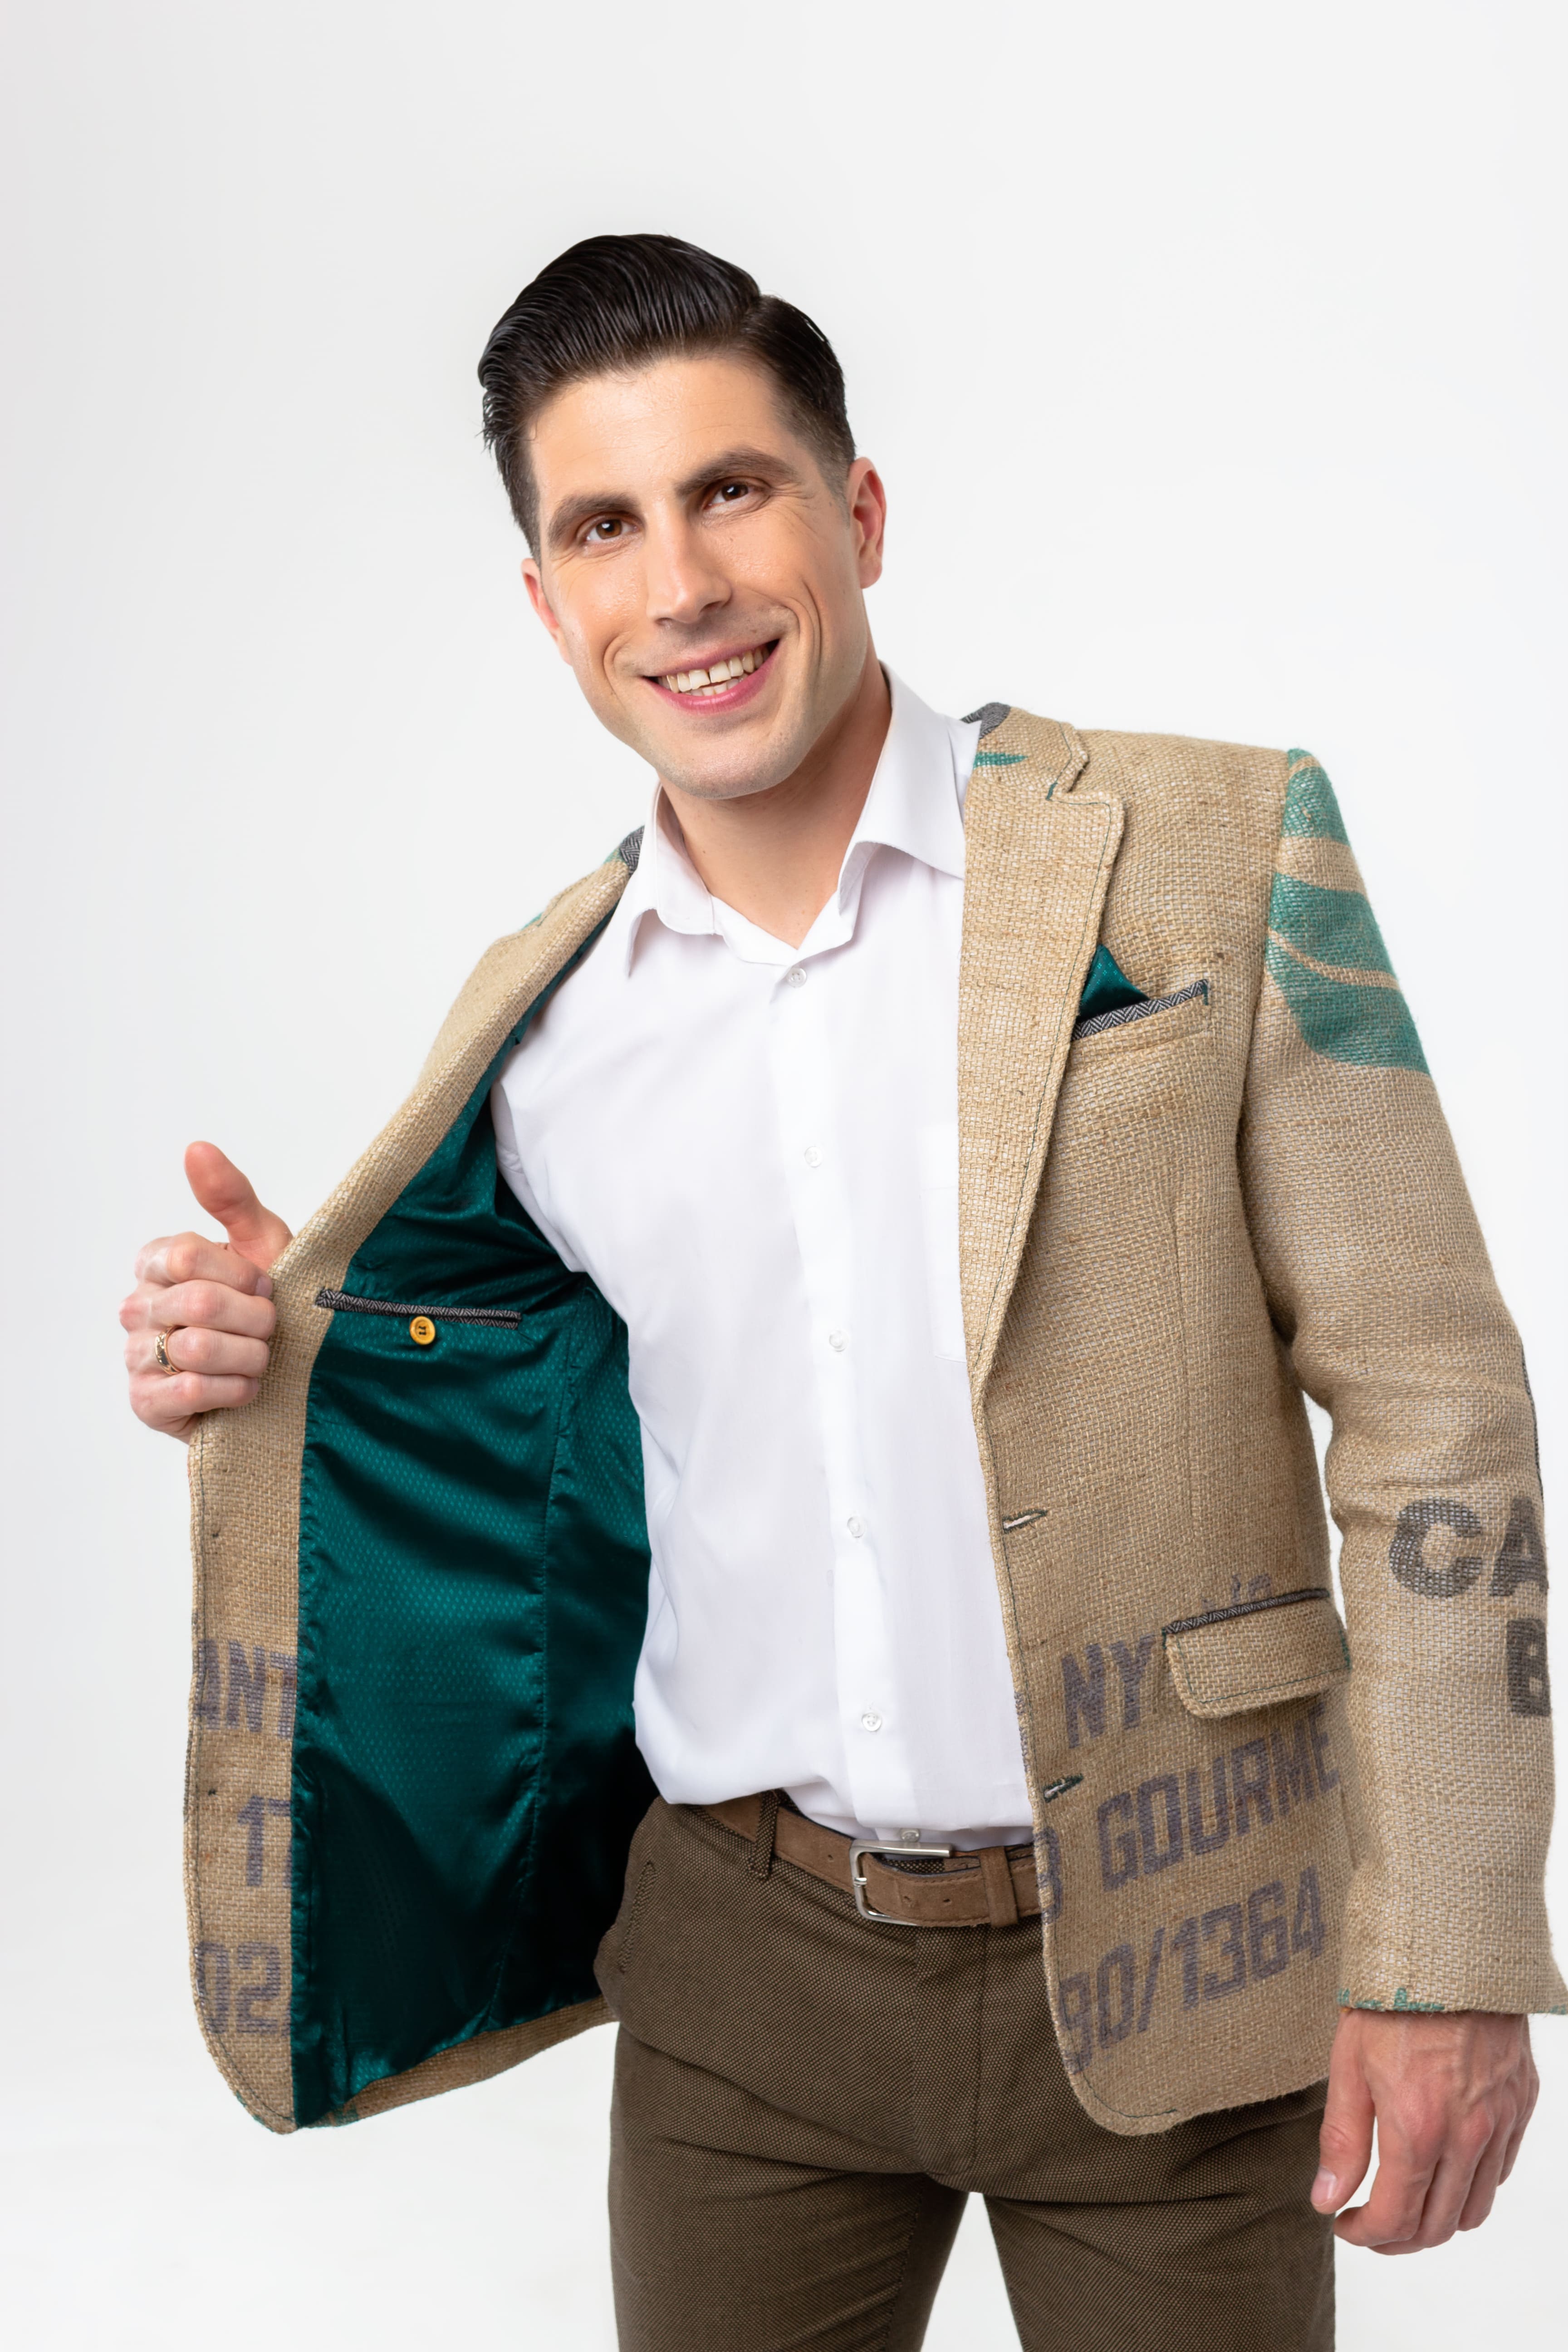 Exclusiva chaqueta reciclada hecha a mano con estampado original de granja para hombres con estilo